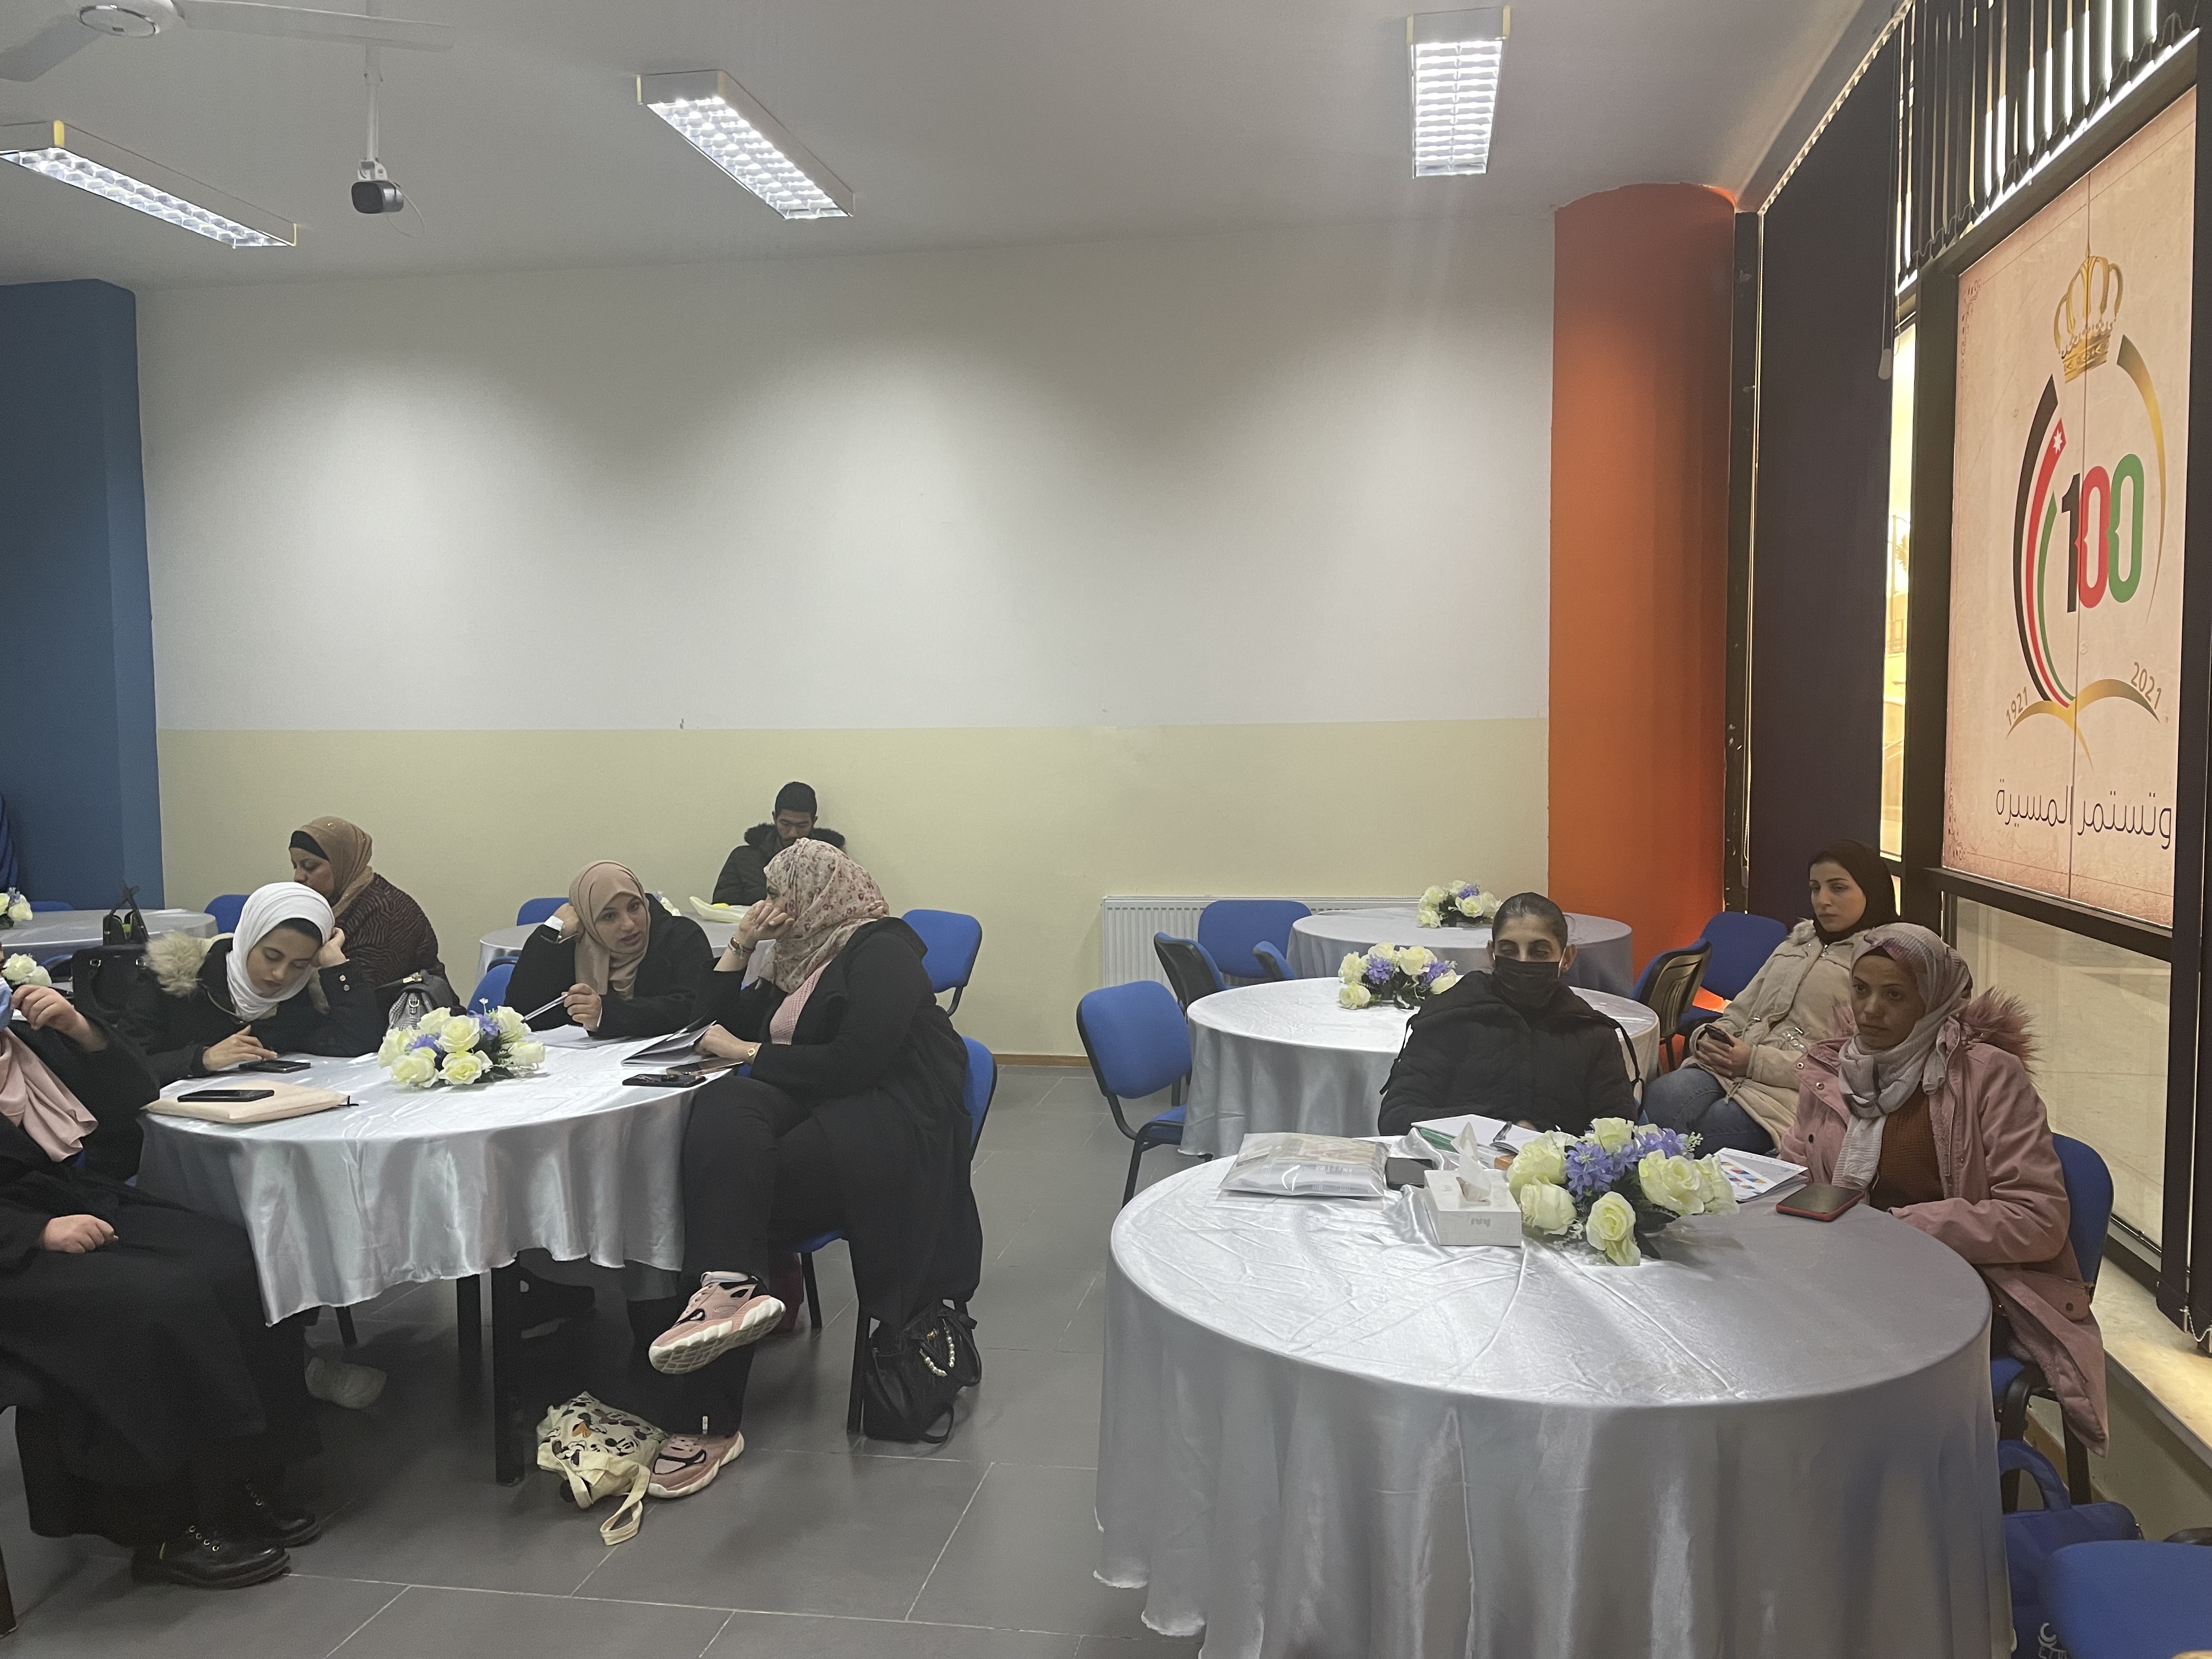 دورات وورشات تدريبية لمكتب الإرشاد الوظيفي ومتابعة الخريجين في "عمان العربية"5